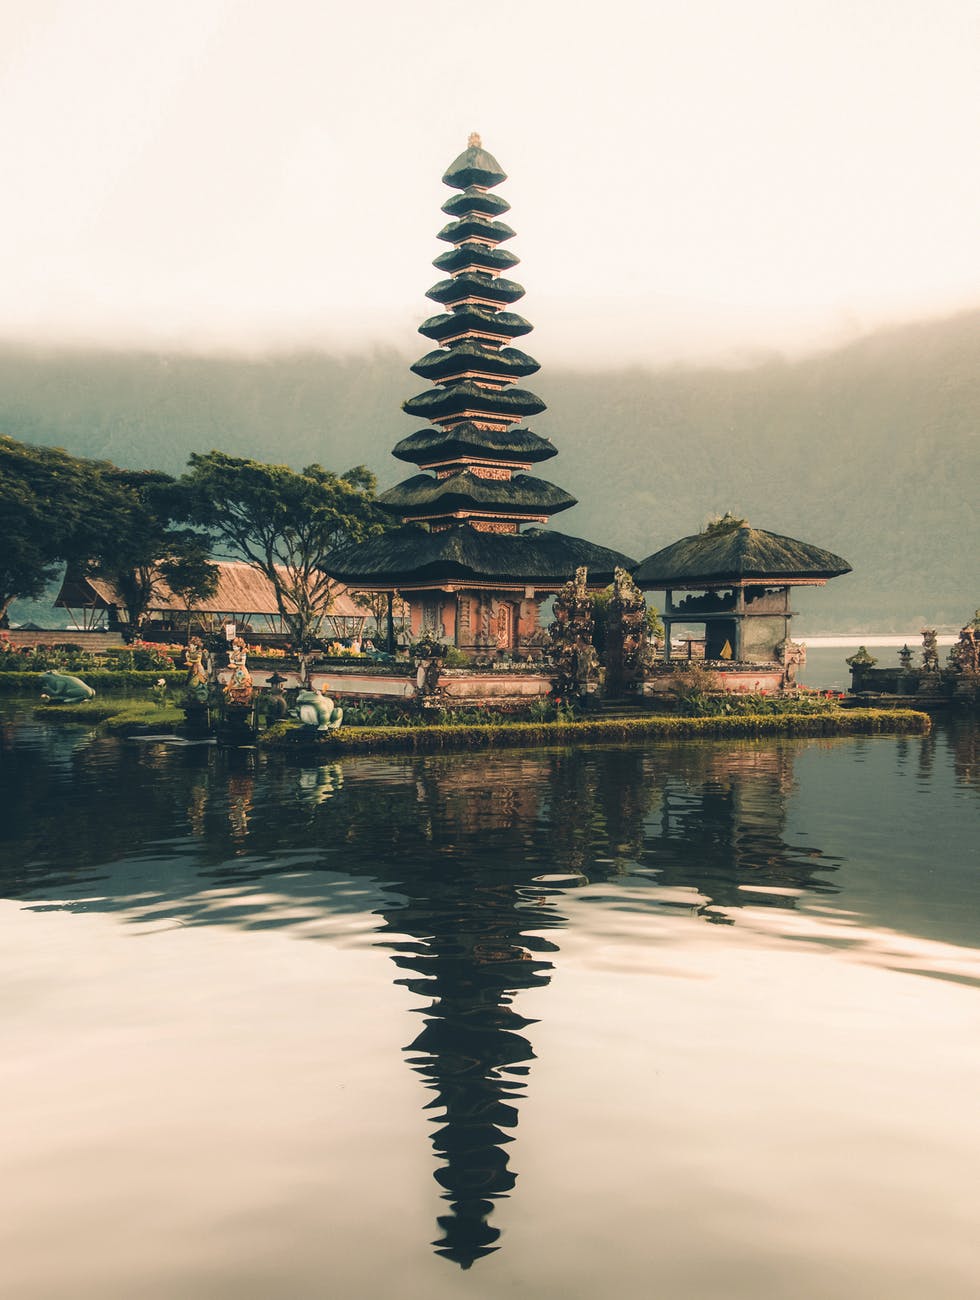 Lima tempat rekomendasi tinggal pensiunan, Bali salah satunya